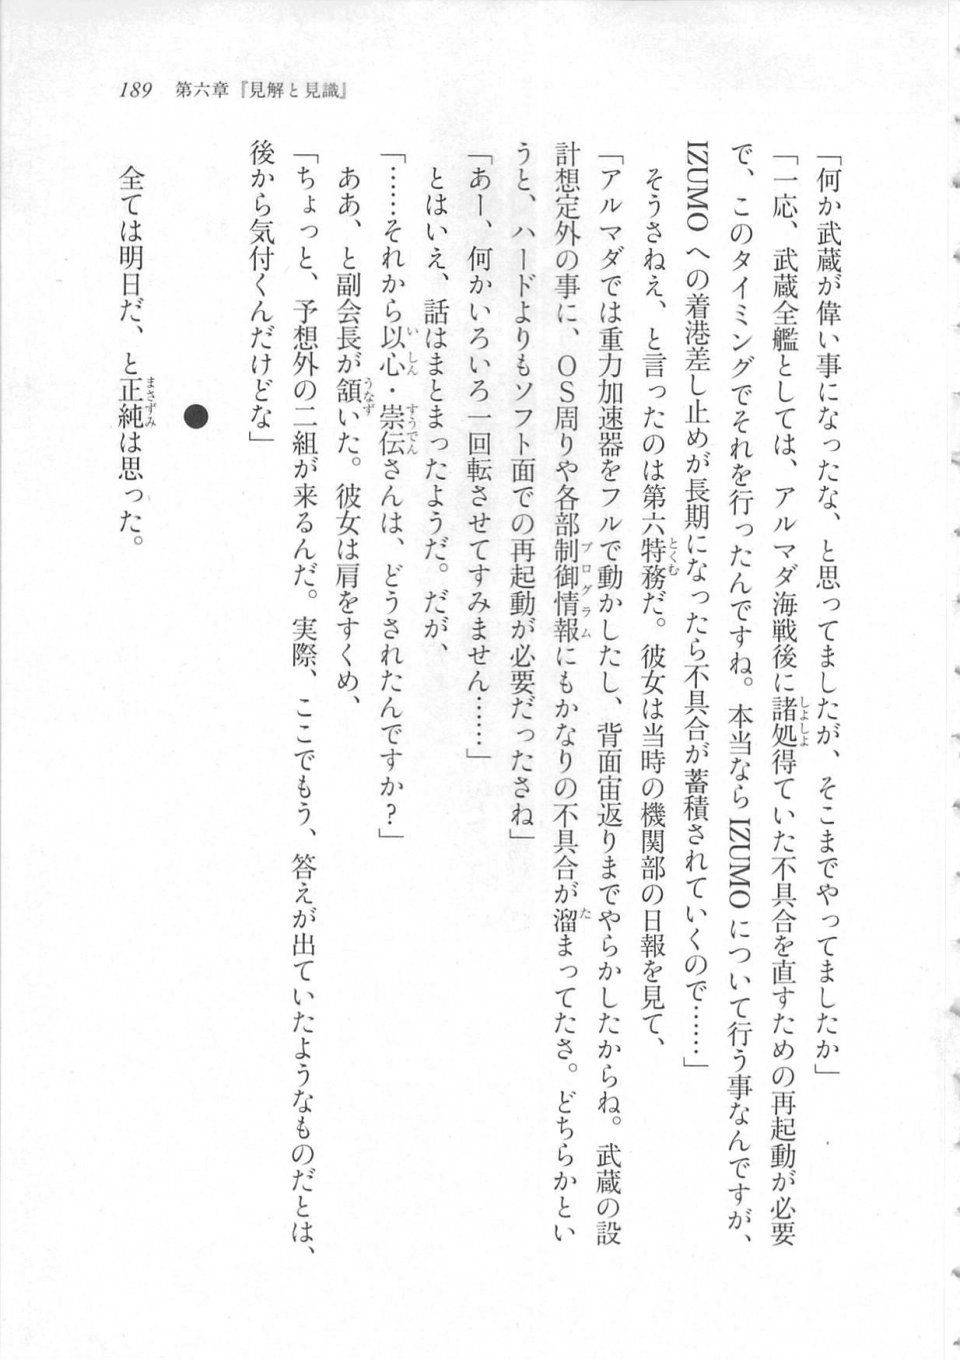 Kyoukai Senjou no Horizon LN Sidestory Vol 3 - Photo #193